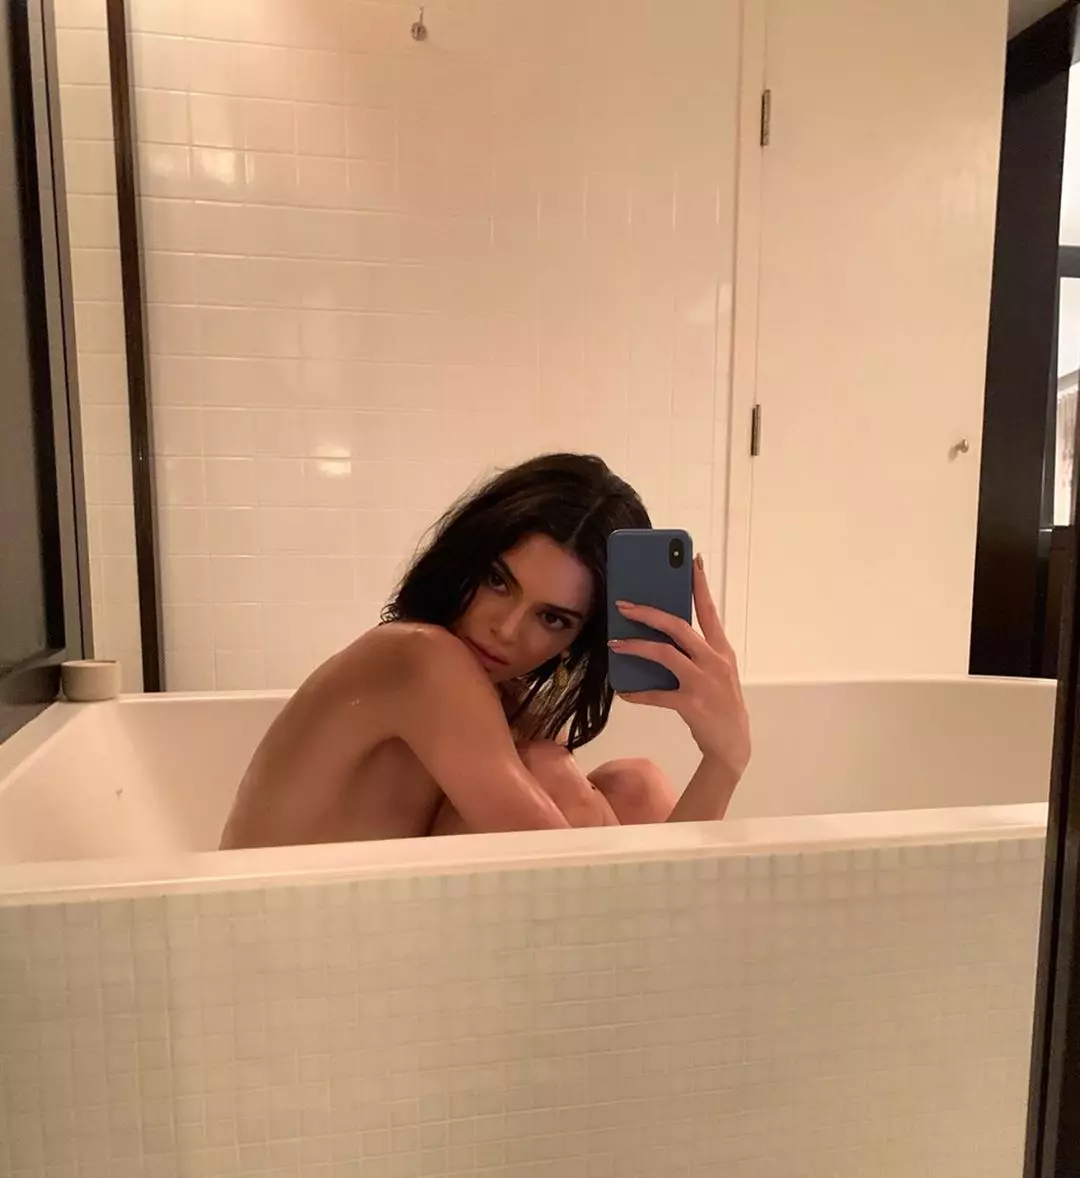 Pe urmele lui Holly Berry: Kendall Jenner a aranjat o sesiune foto Frank în baie 118118_1